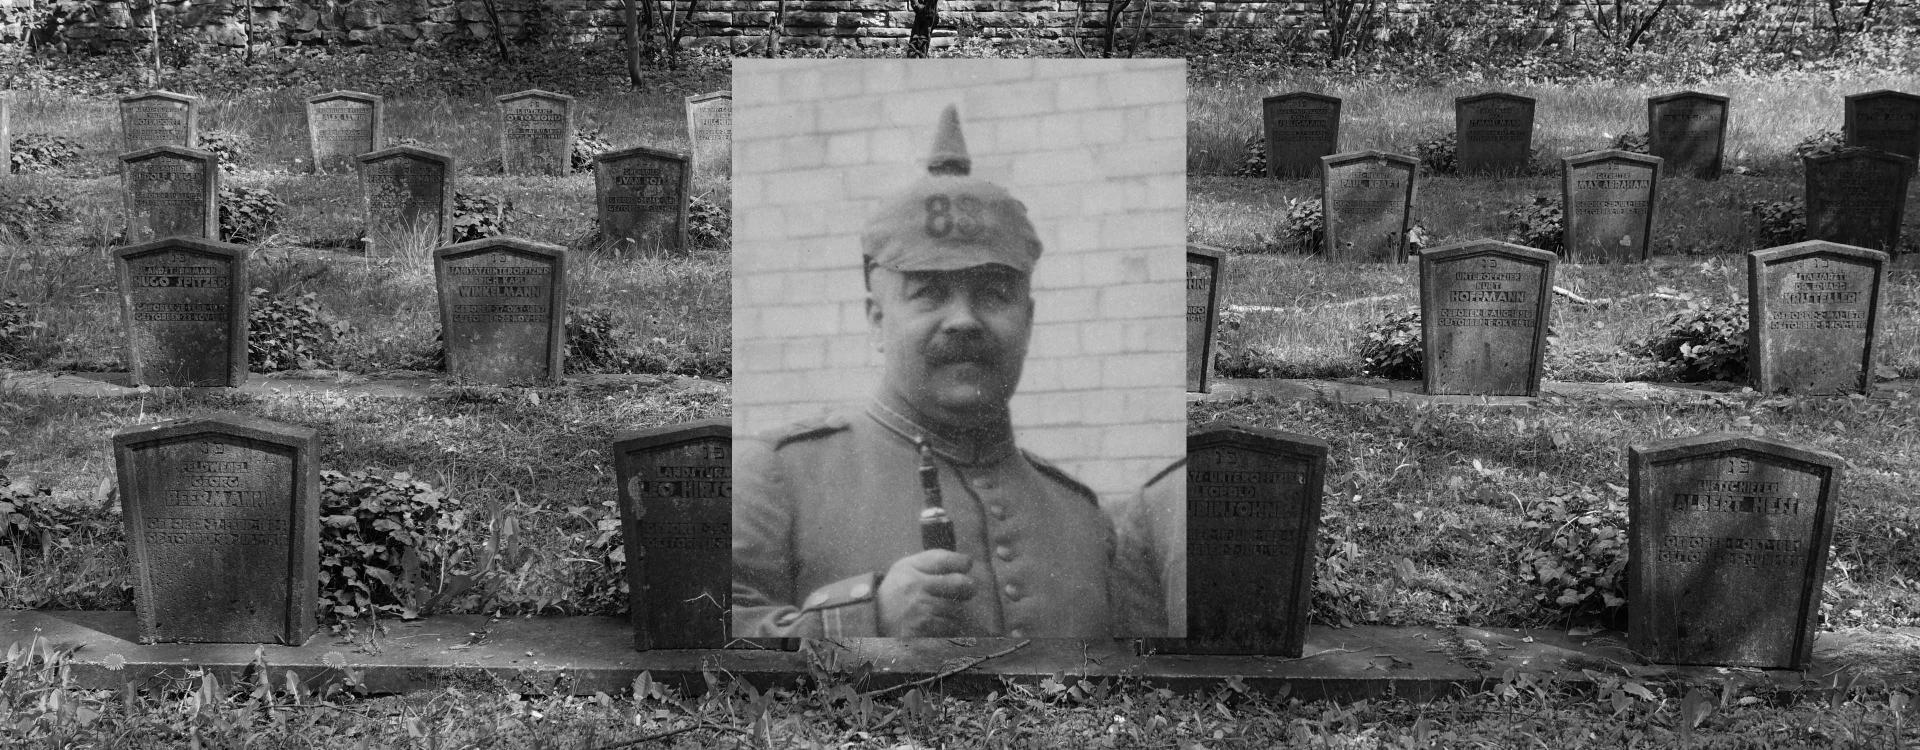 Schwarz-weiß-Foto eines Friedhofs, darüber das Porträtfoto eines Soldaten